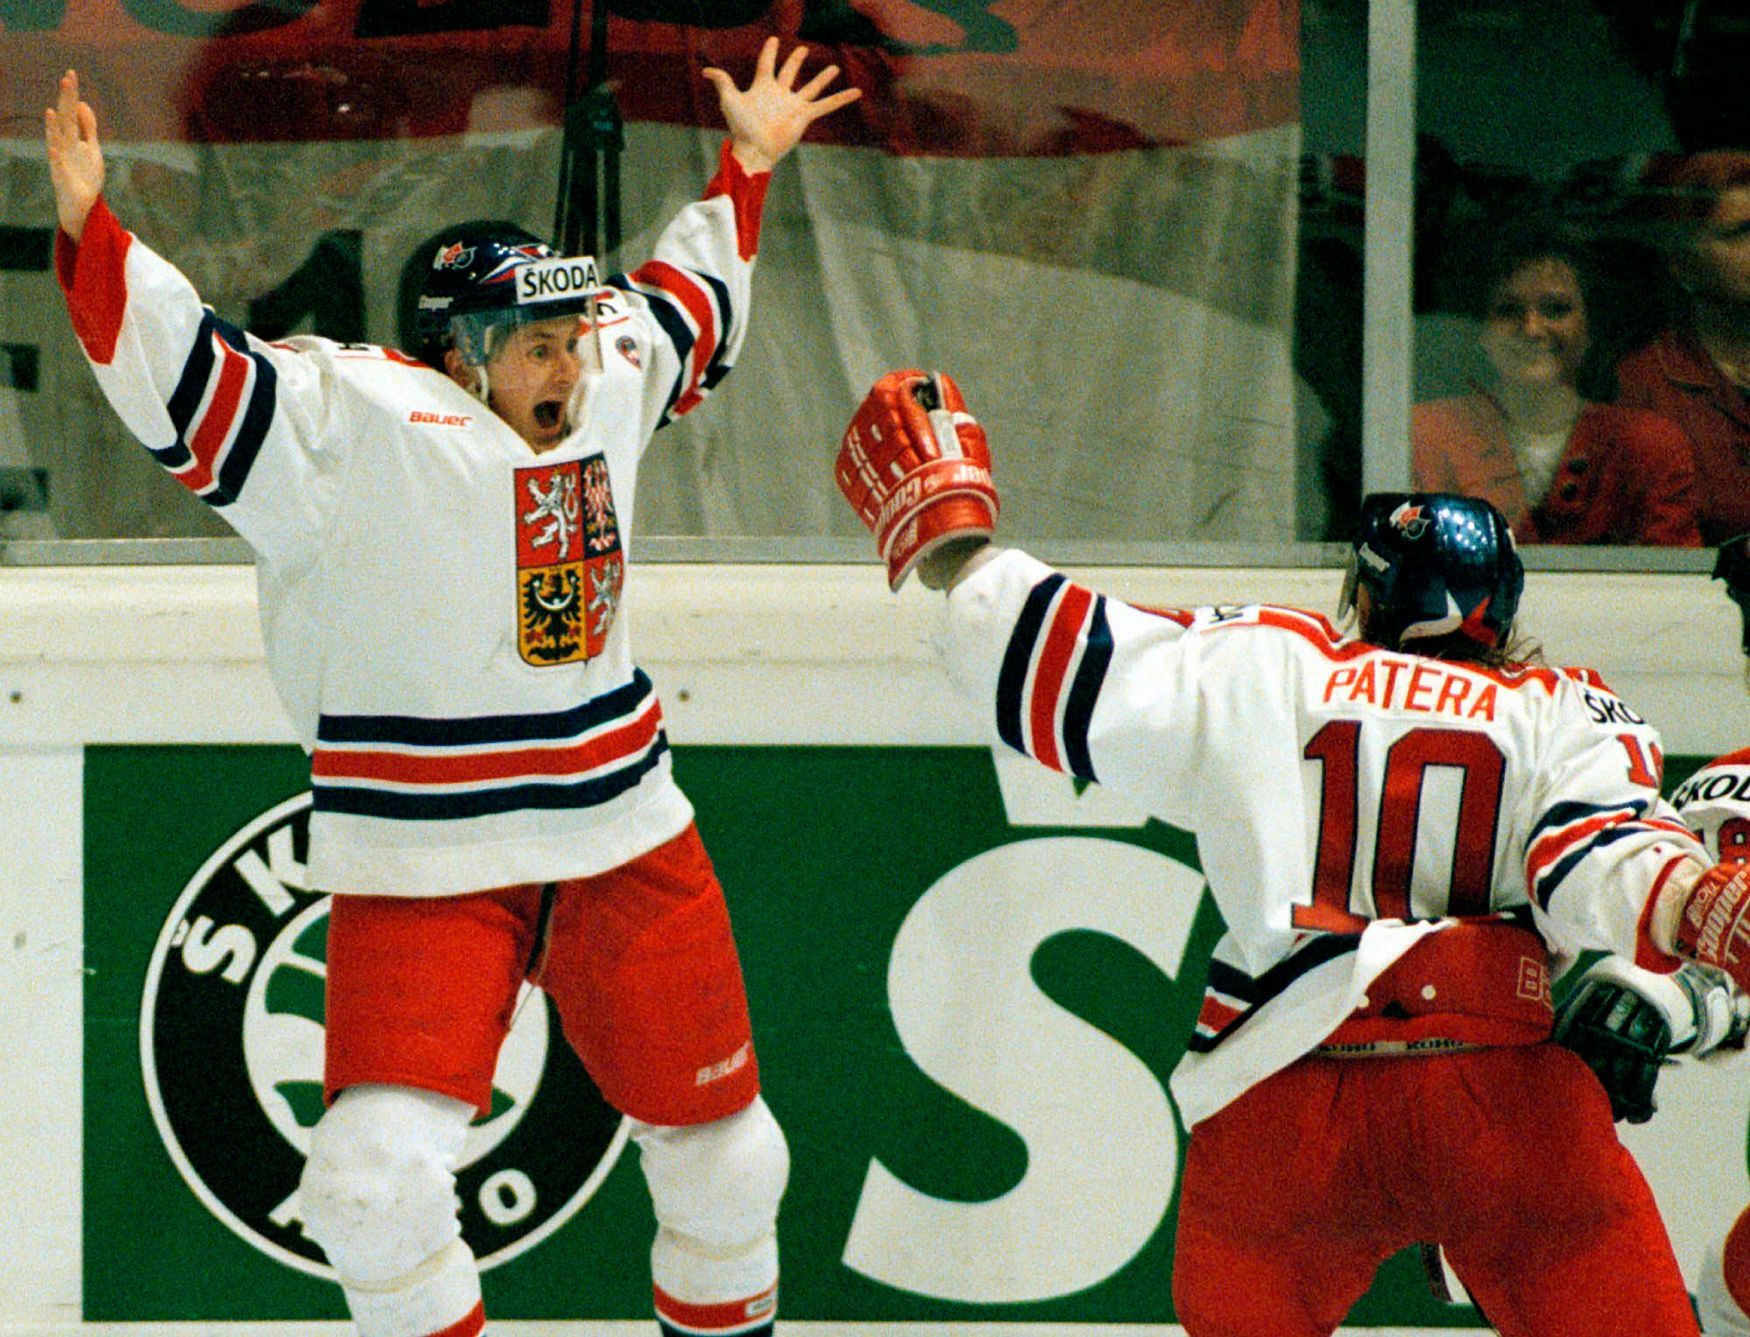 MS v hokeji 1996: Martin Procházka a Pavel Patera oslavují vítězný gól ve finále proti Kanadě